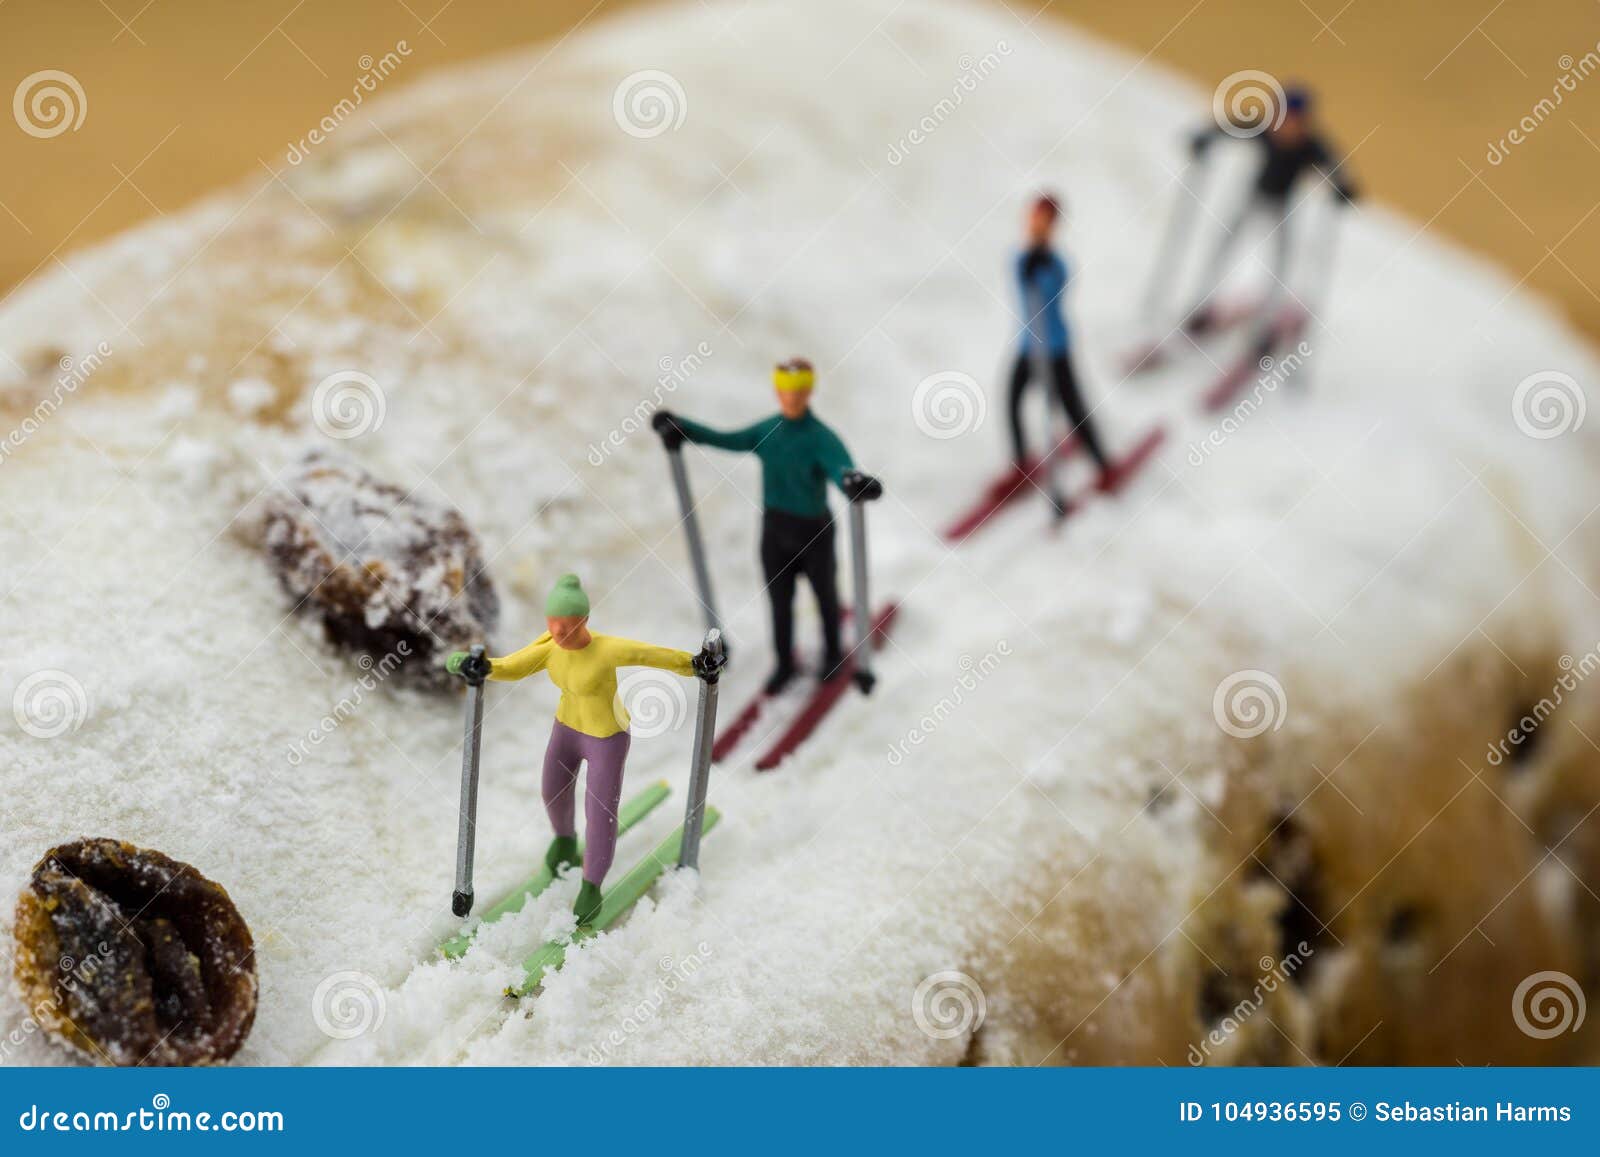 https://thumbs.dreamstime.com/z/ski-miniature-de-skieur-sur-un-g%C3%A2teau-104936595.jpg